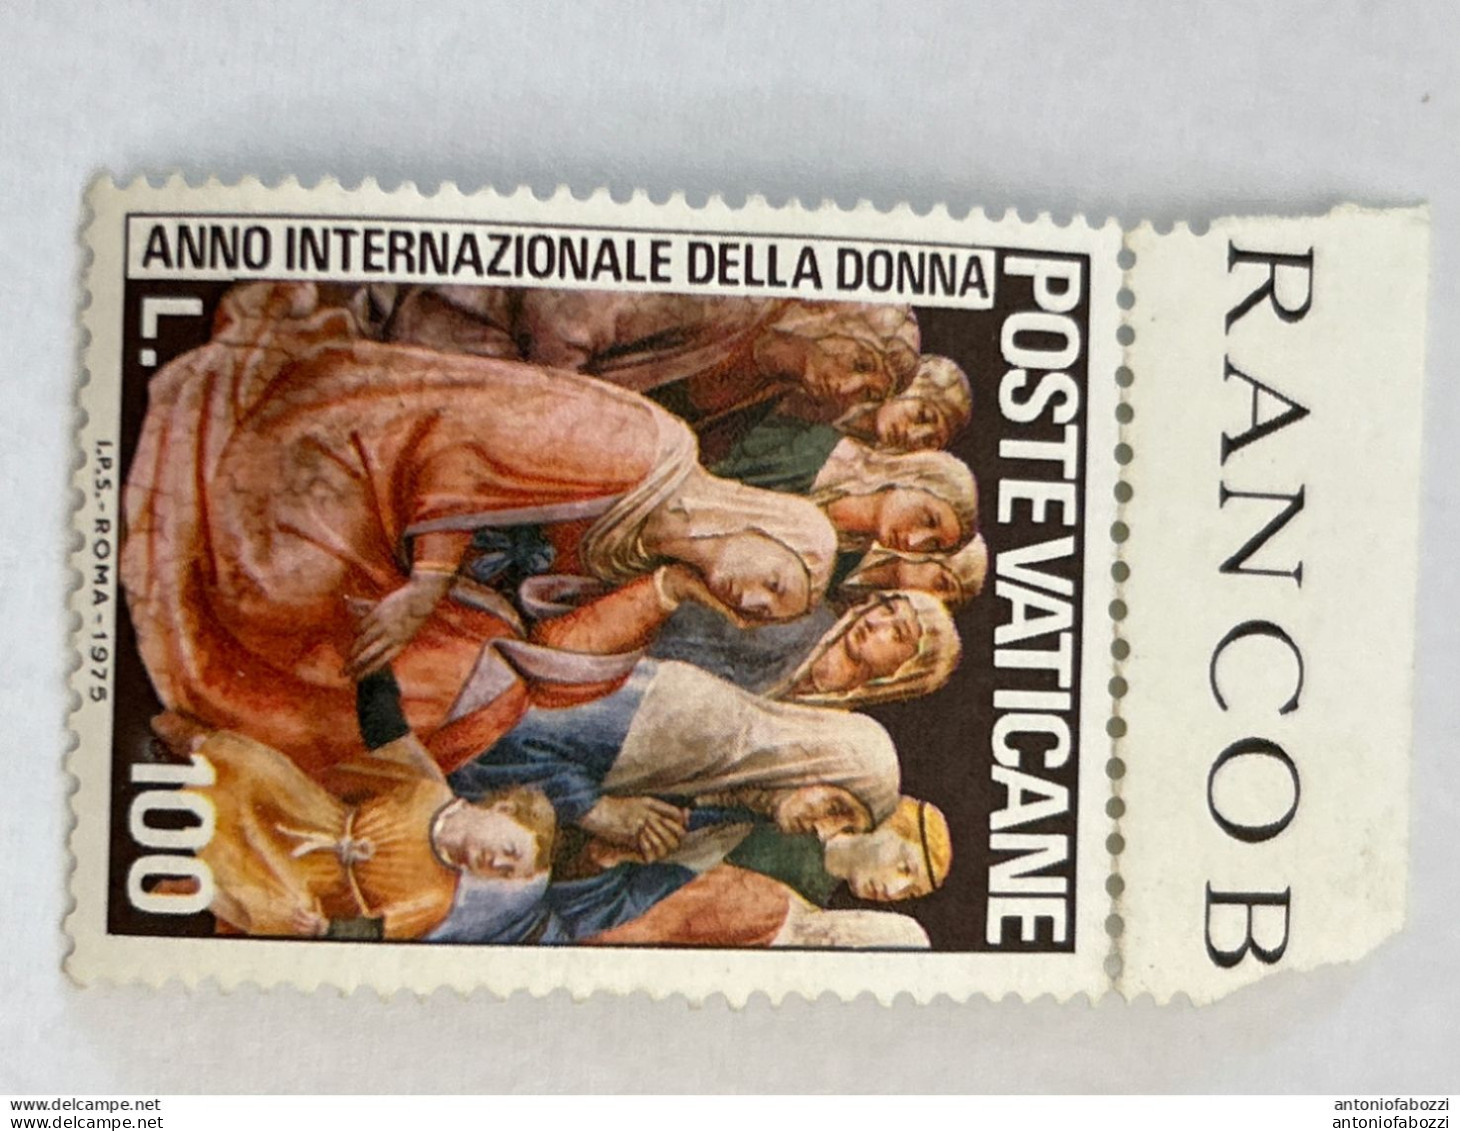 Interessante selezione di francobolli usati in ottimo stato (vedi foto), (nuovi ed usati) di buon valore filatelico